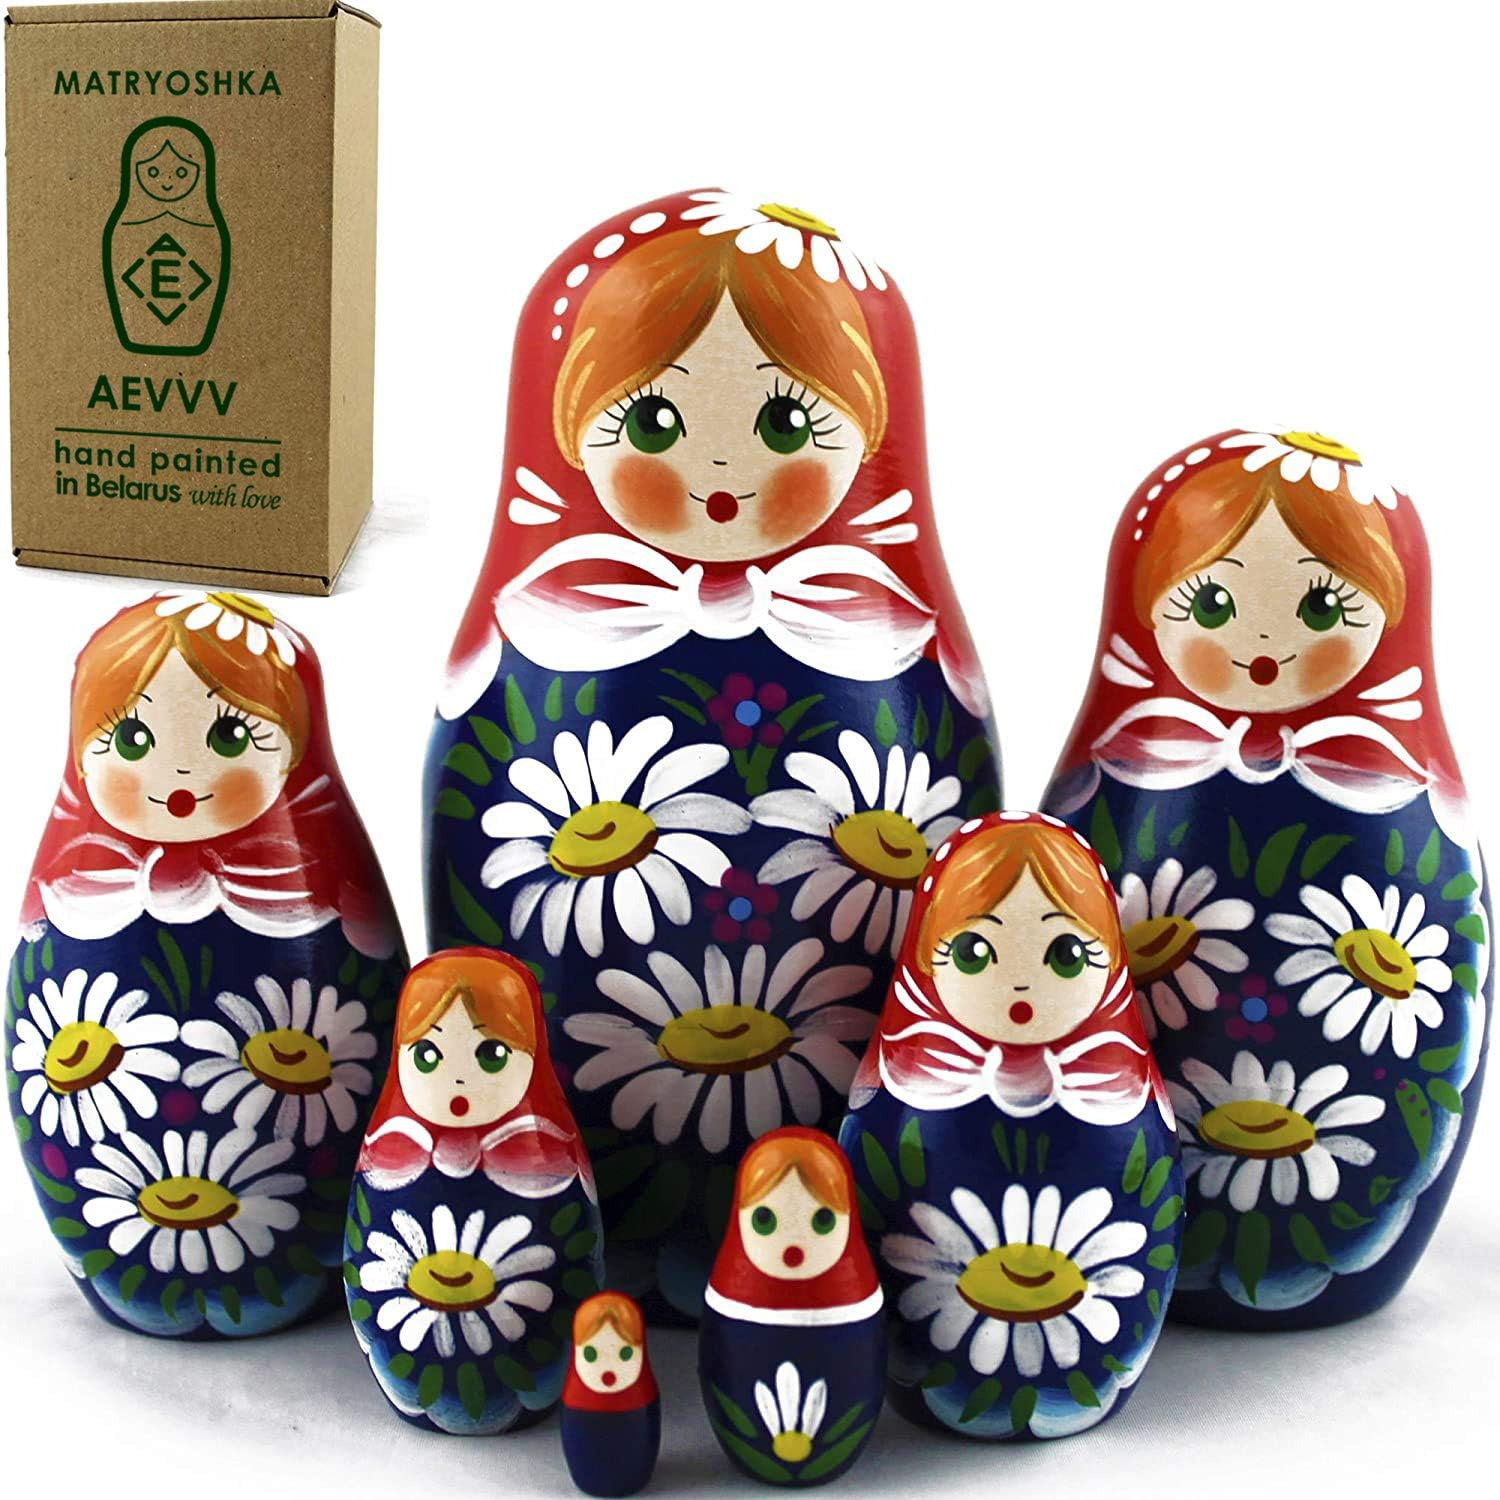 Matryoshka Matrioskas - 7 Russian Nesting Dolls for Kids - Babushka Matruska Toy